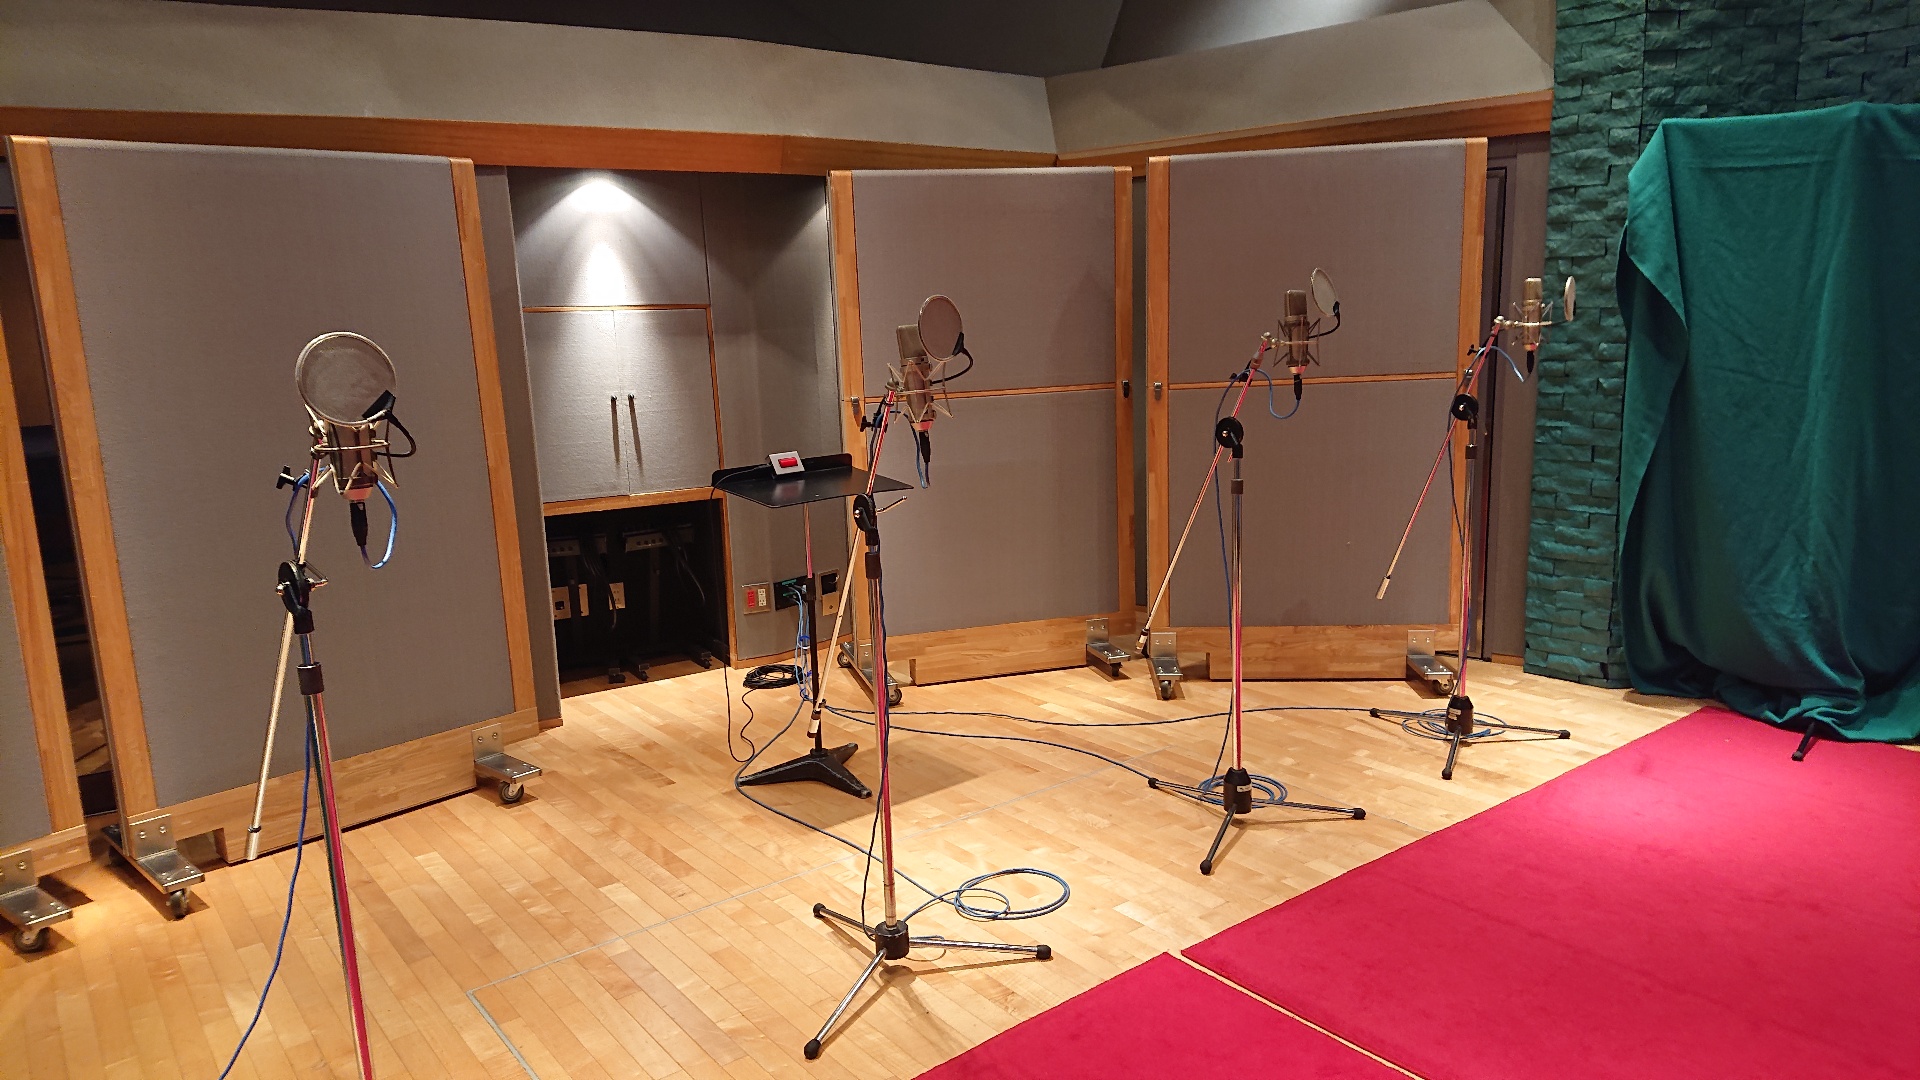 ドラマcdの音声収録を担当 複数人同時収録の方法やメリットについて Mit Studio エムアイティ スタジオ プロユースレコーディング スタジオ 東京 港区